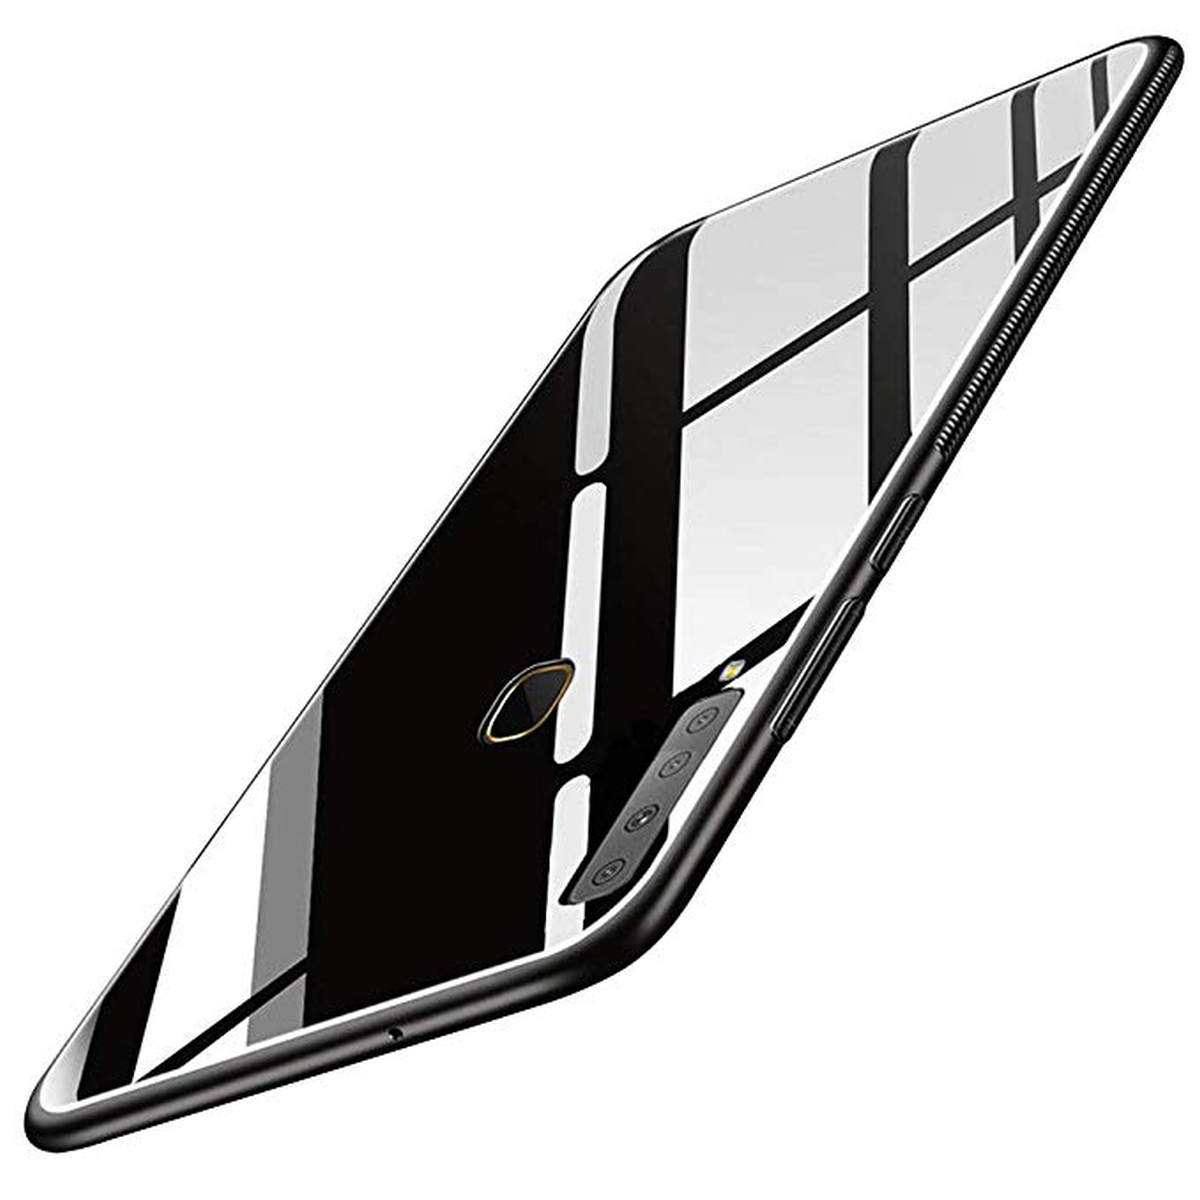 Samsung Galaxy A9 hybrid case